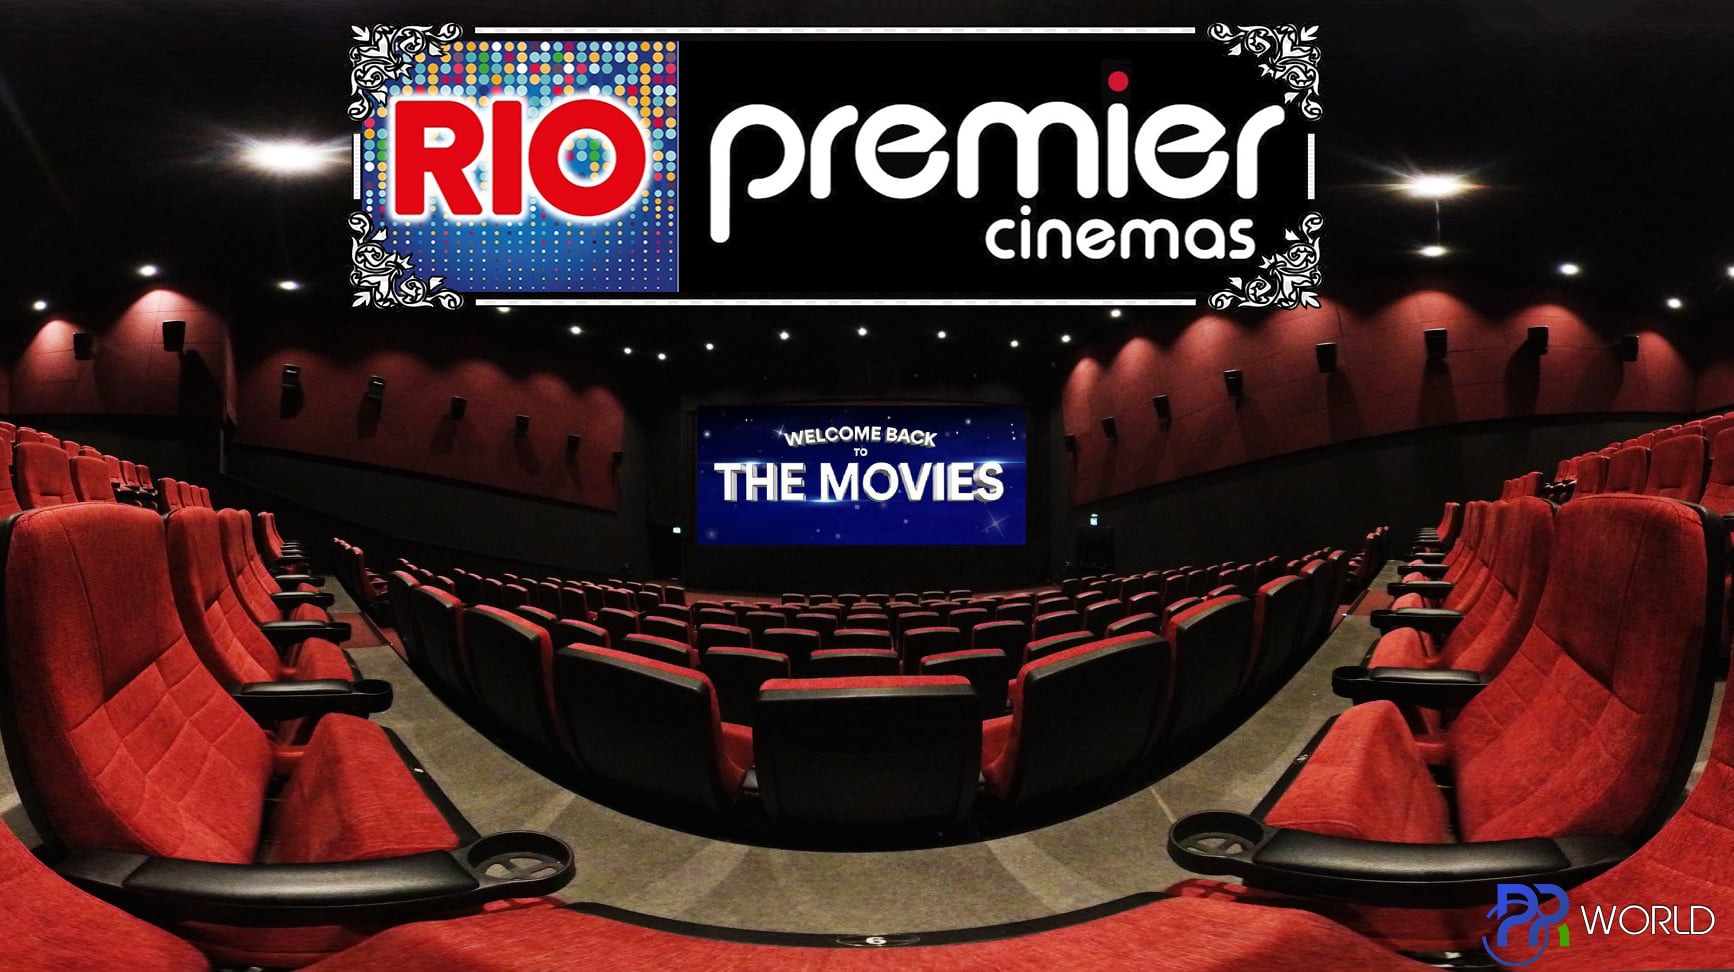 Rio Premier Cinemas